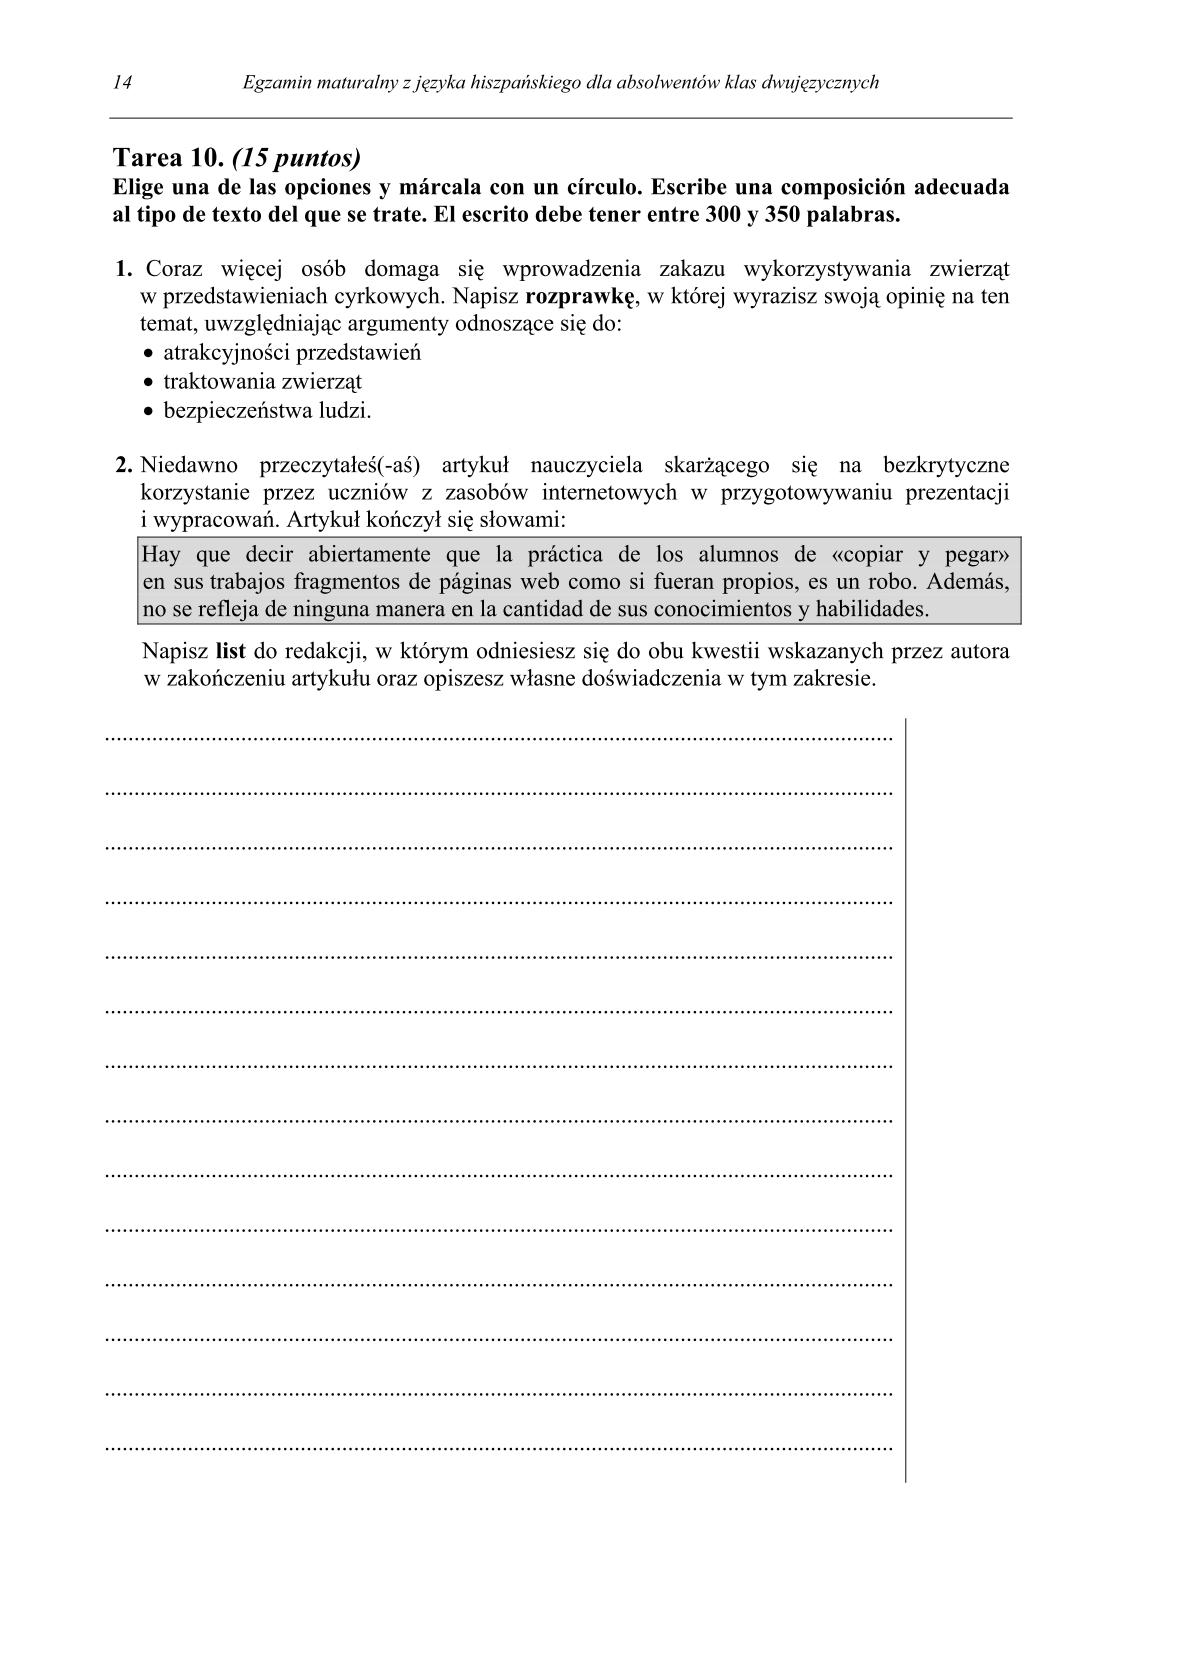 pytania-hiszpanski-dla-absolwentow-klas-dwujezycznych-matura-2014-str.14